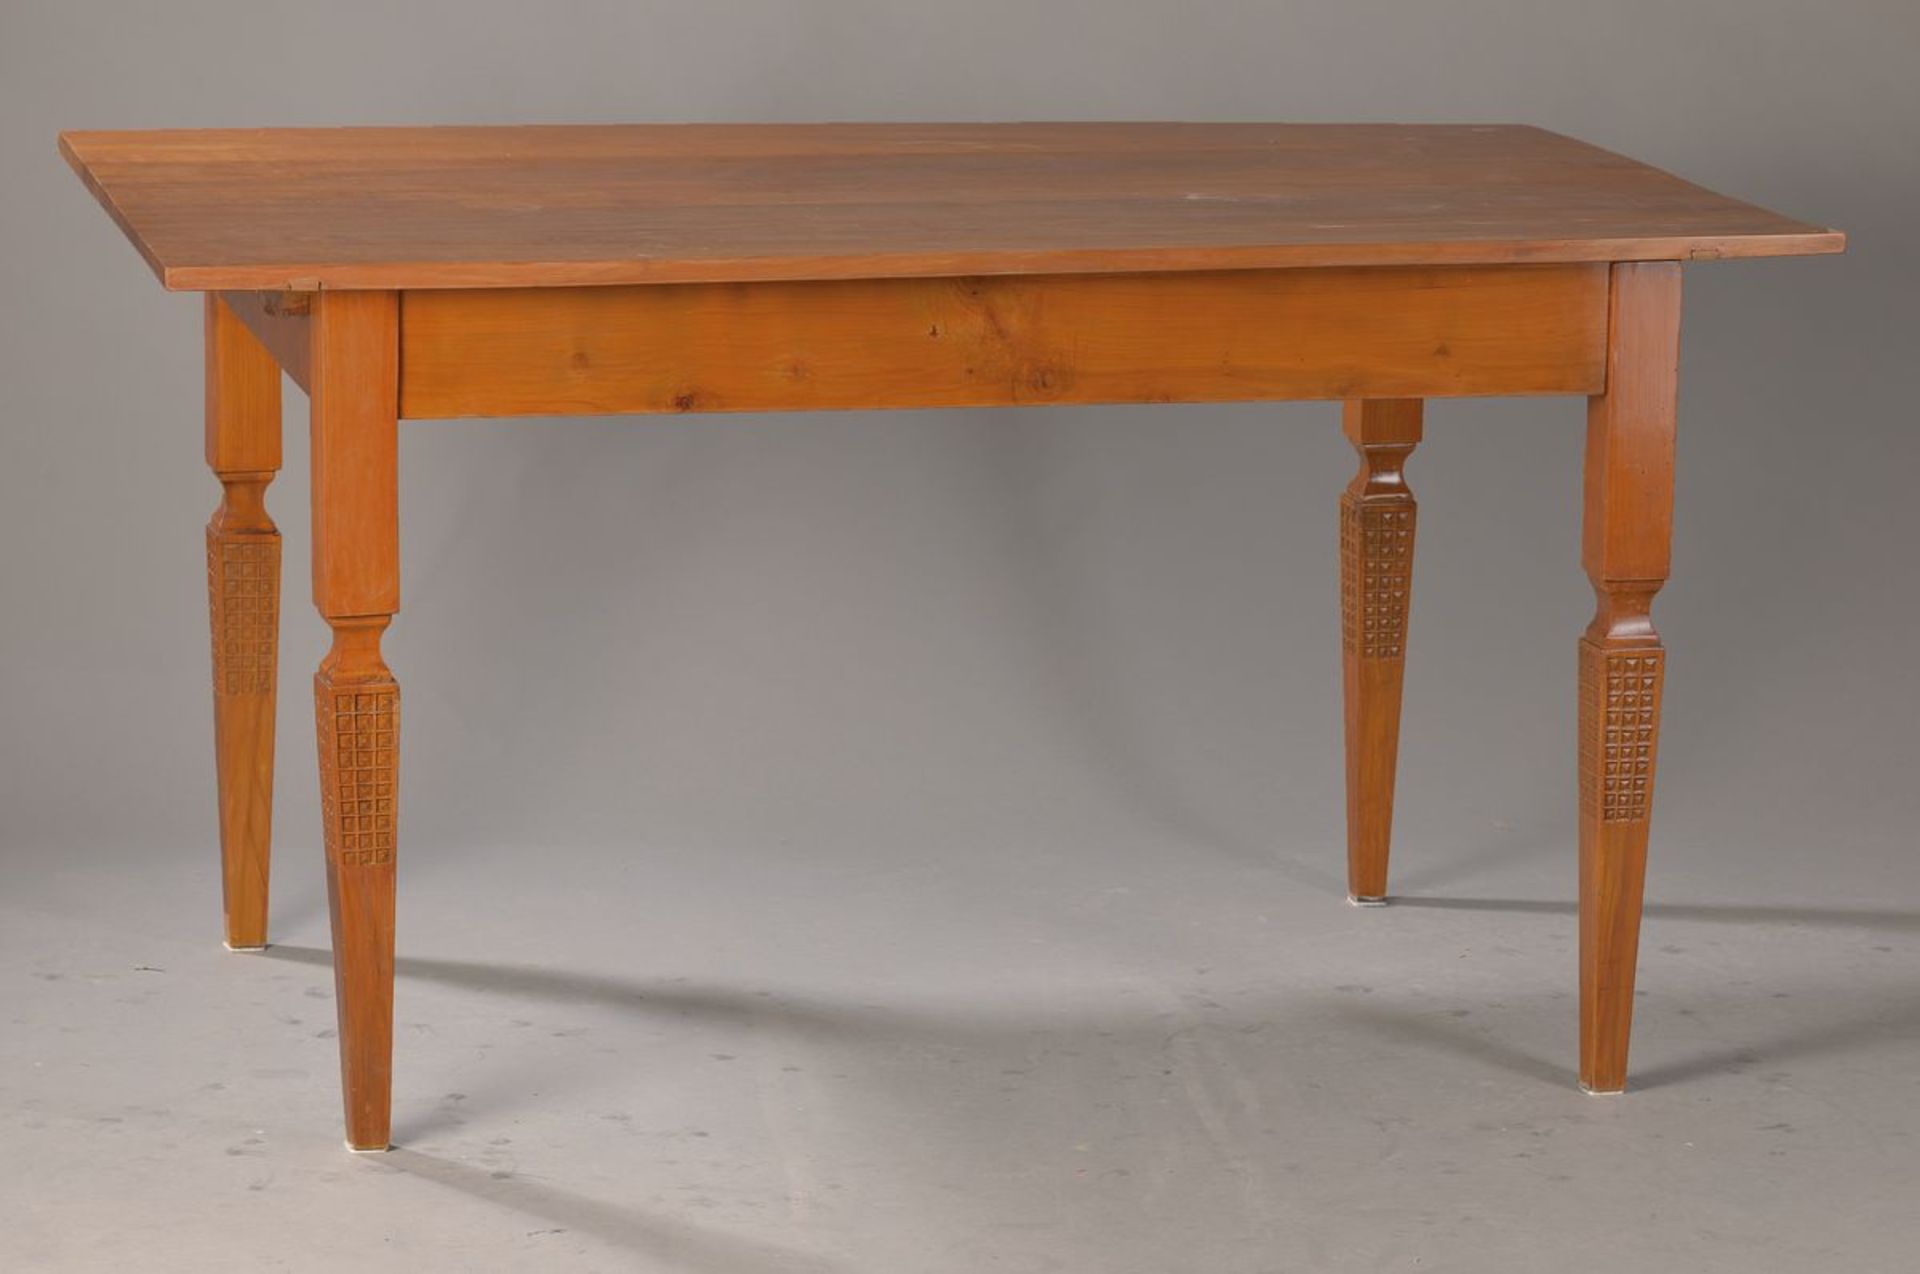 Tisch, süddeutsch, um 1780, klassizistisch, Kirschbaum massiv, beschnitzte Beine, restauriert und